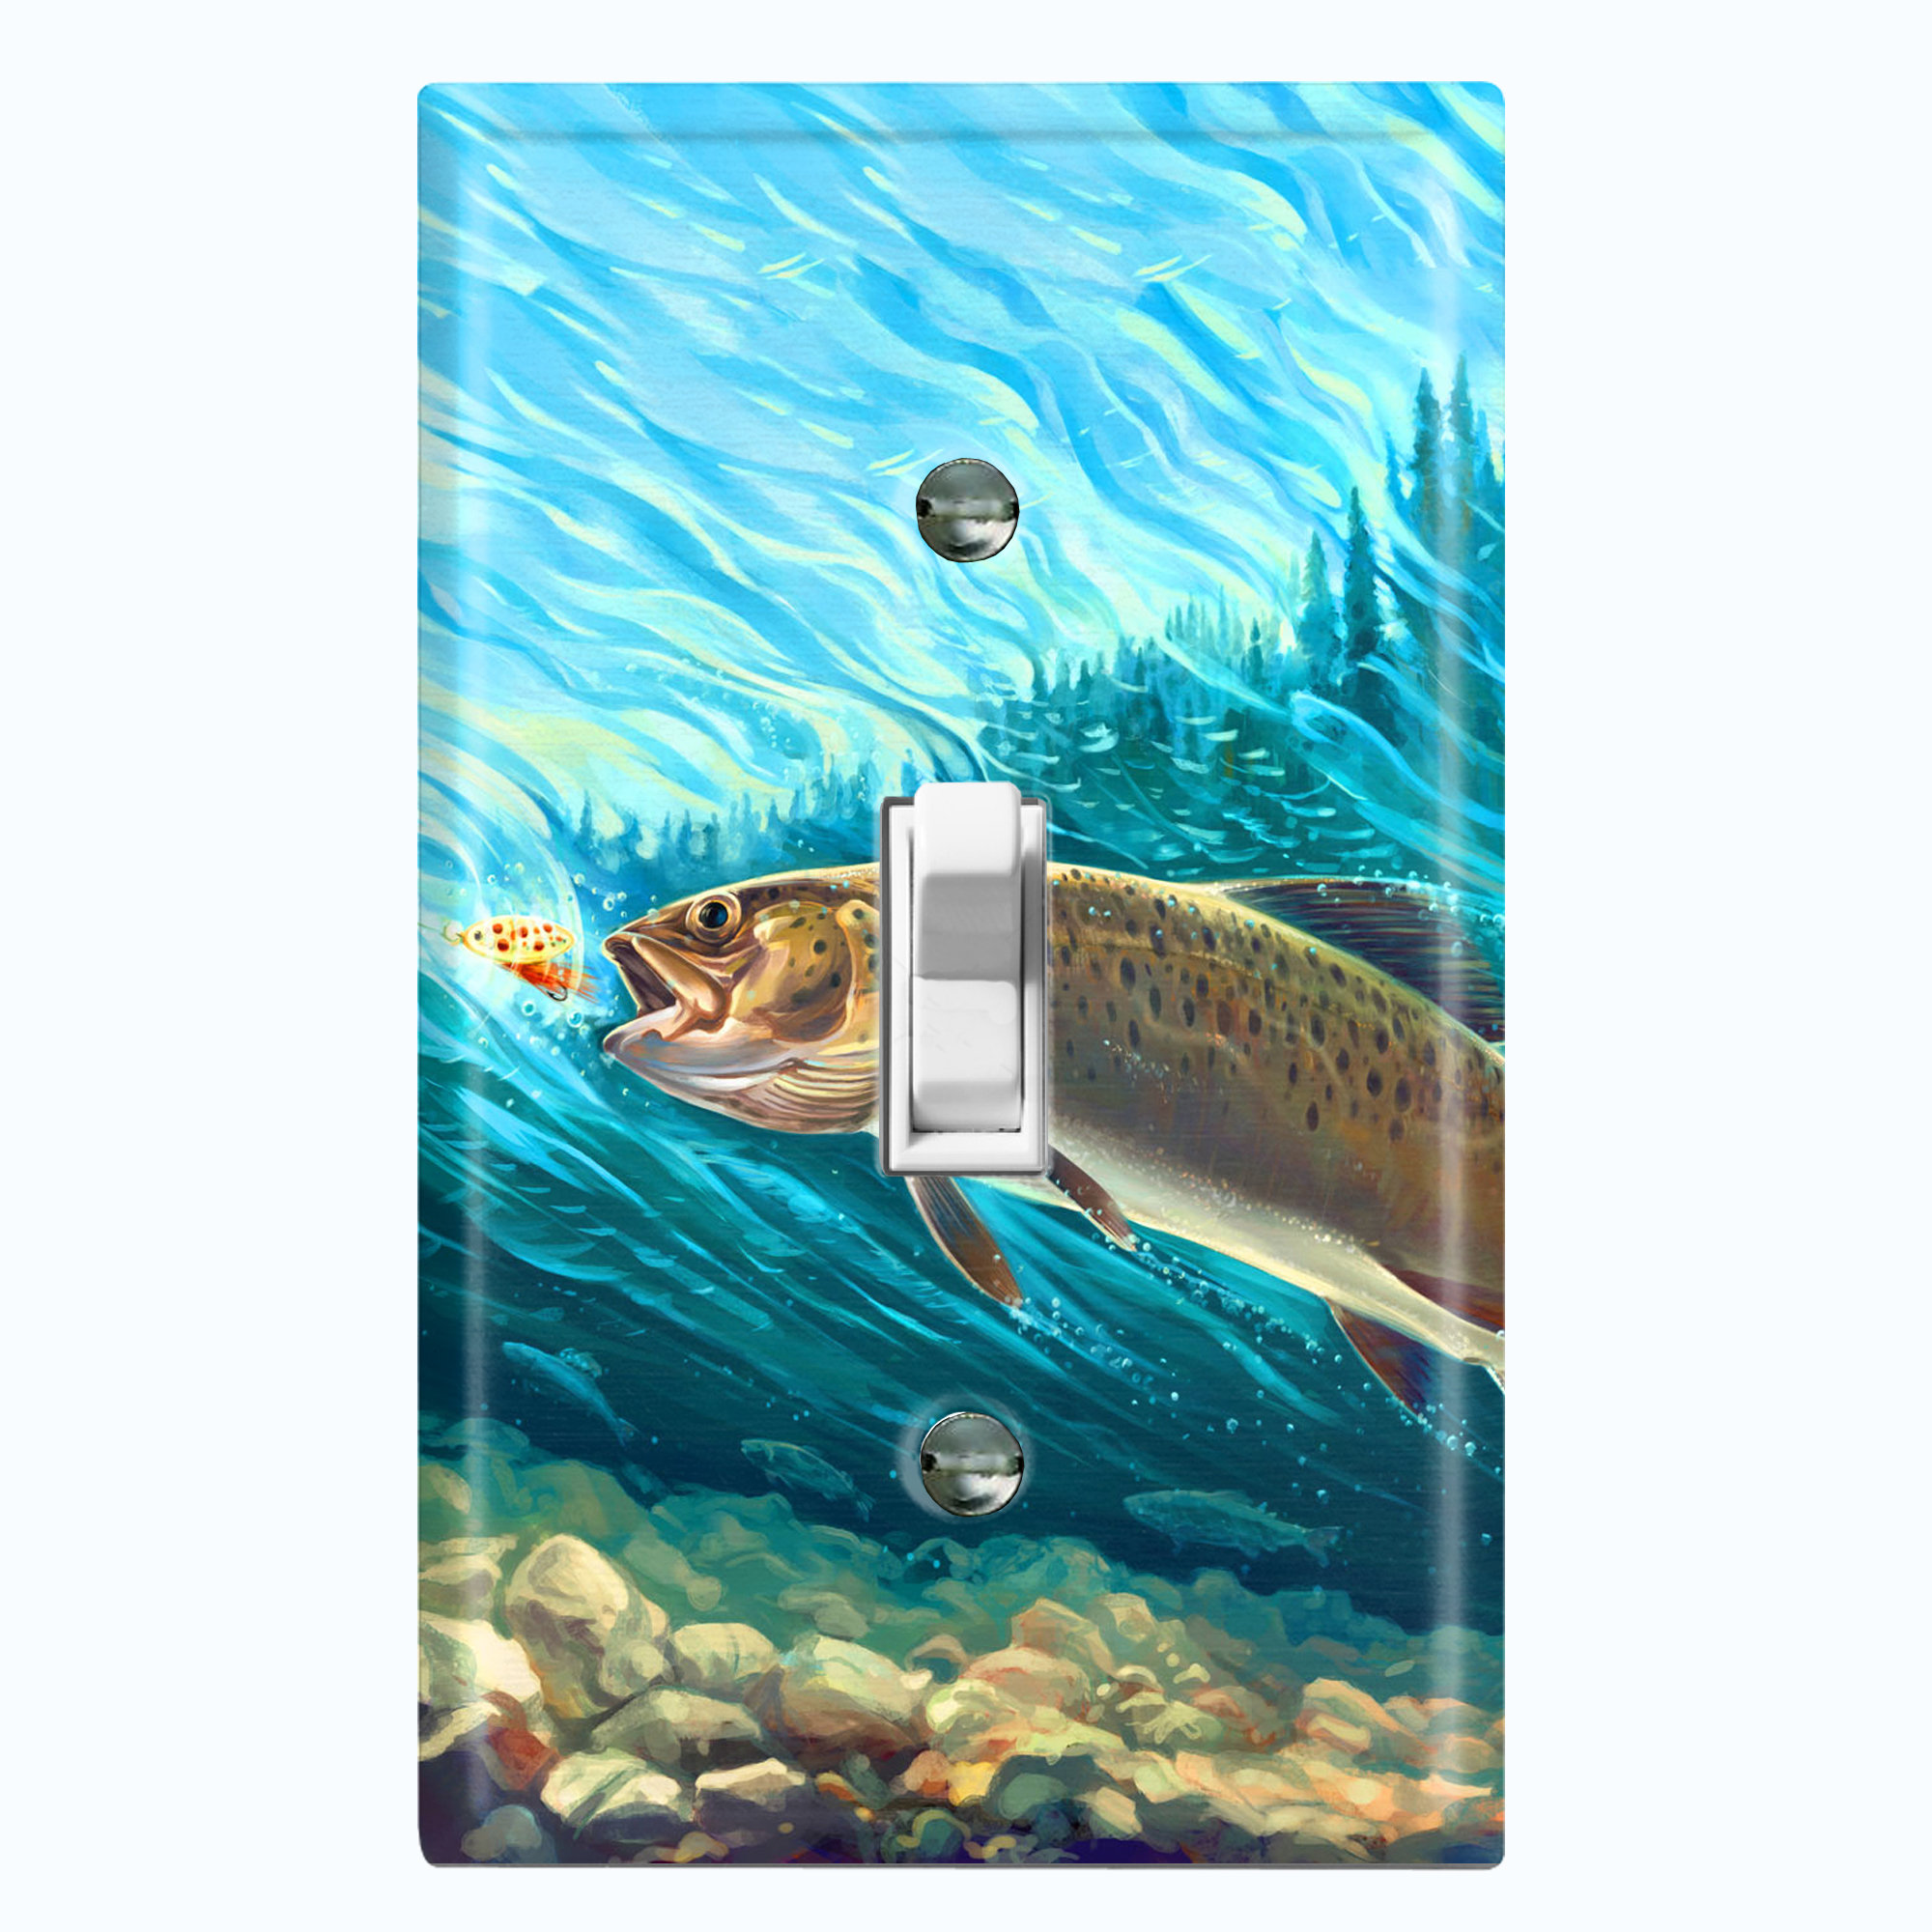 Fresh Water Fish tile art-Brown Trout-Tile Mural